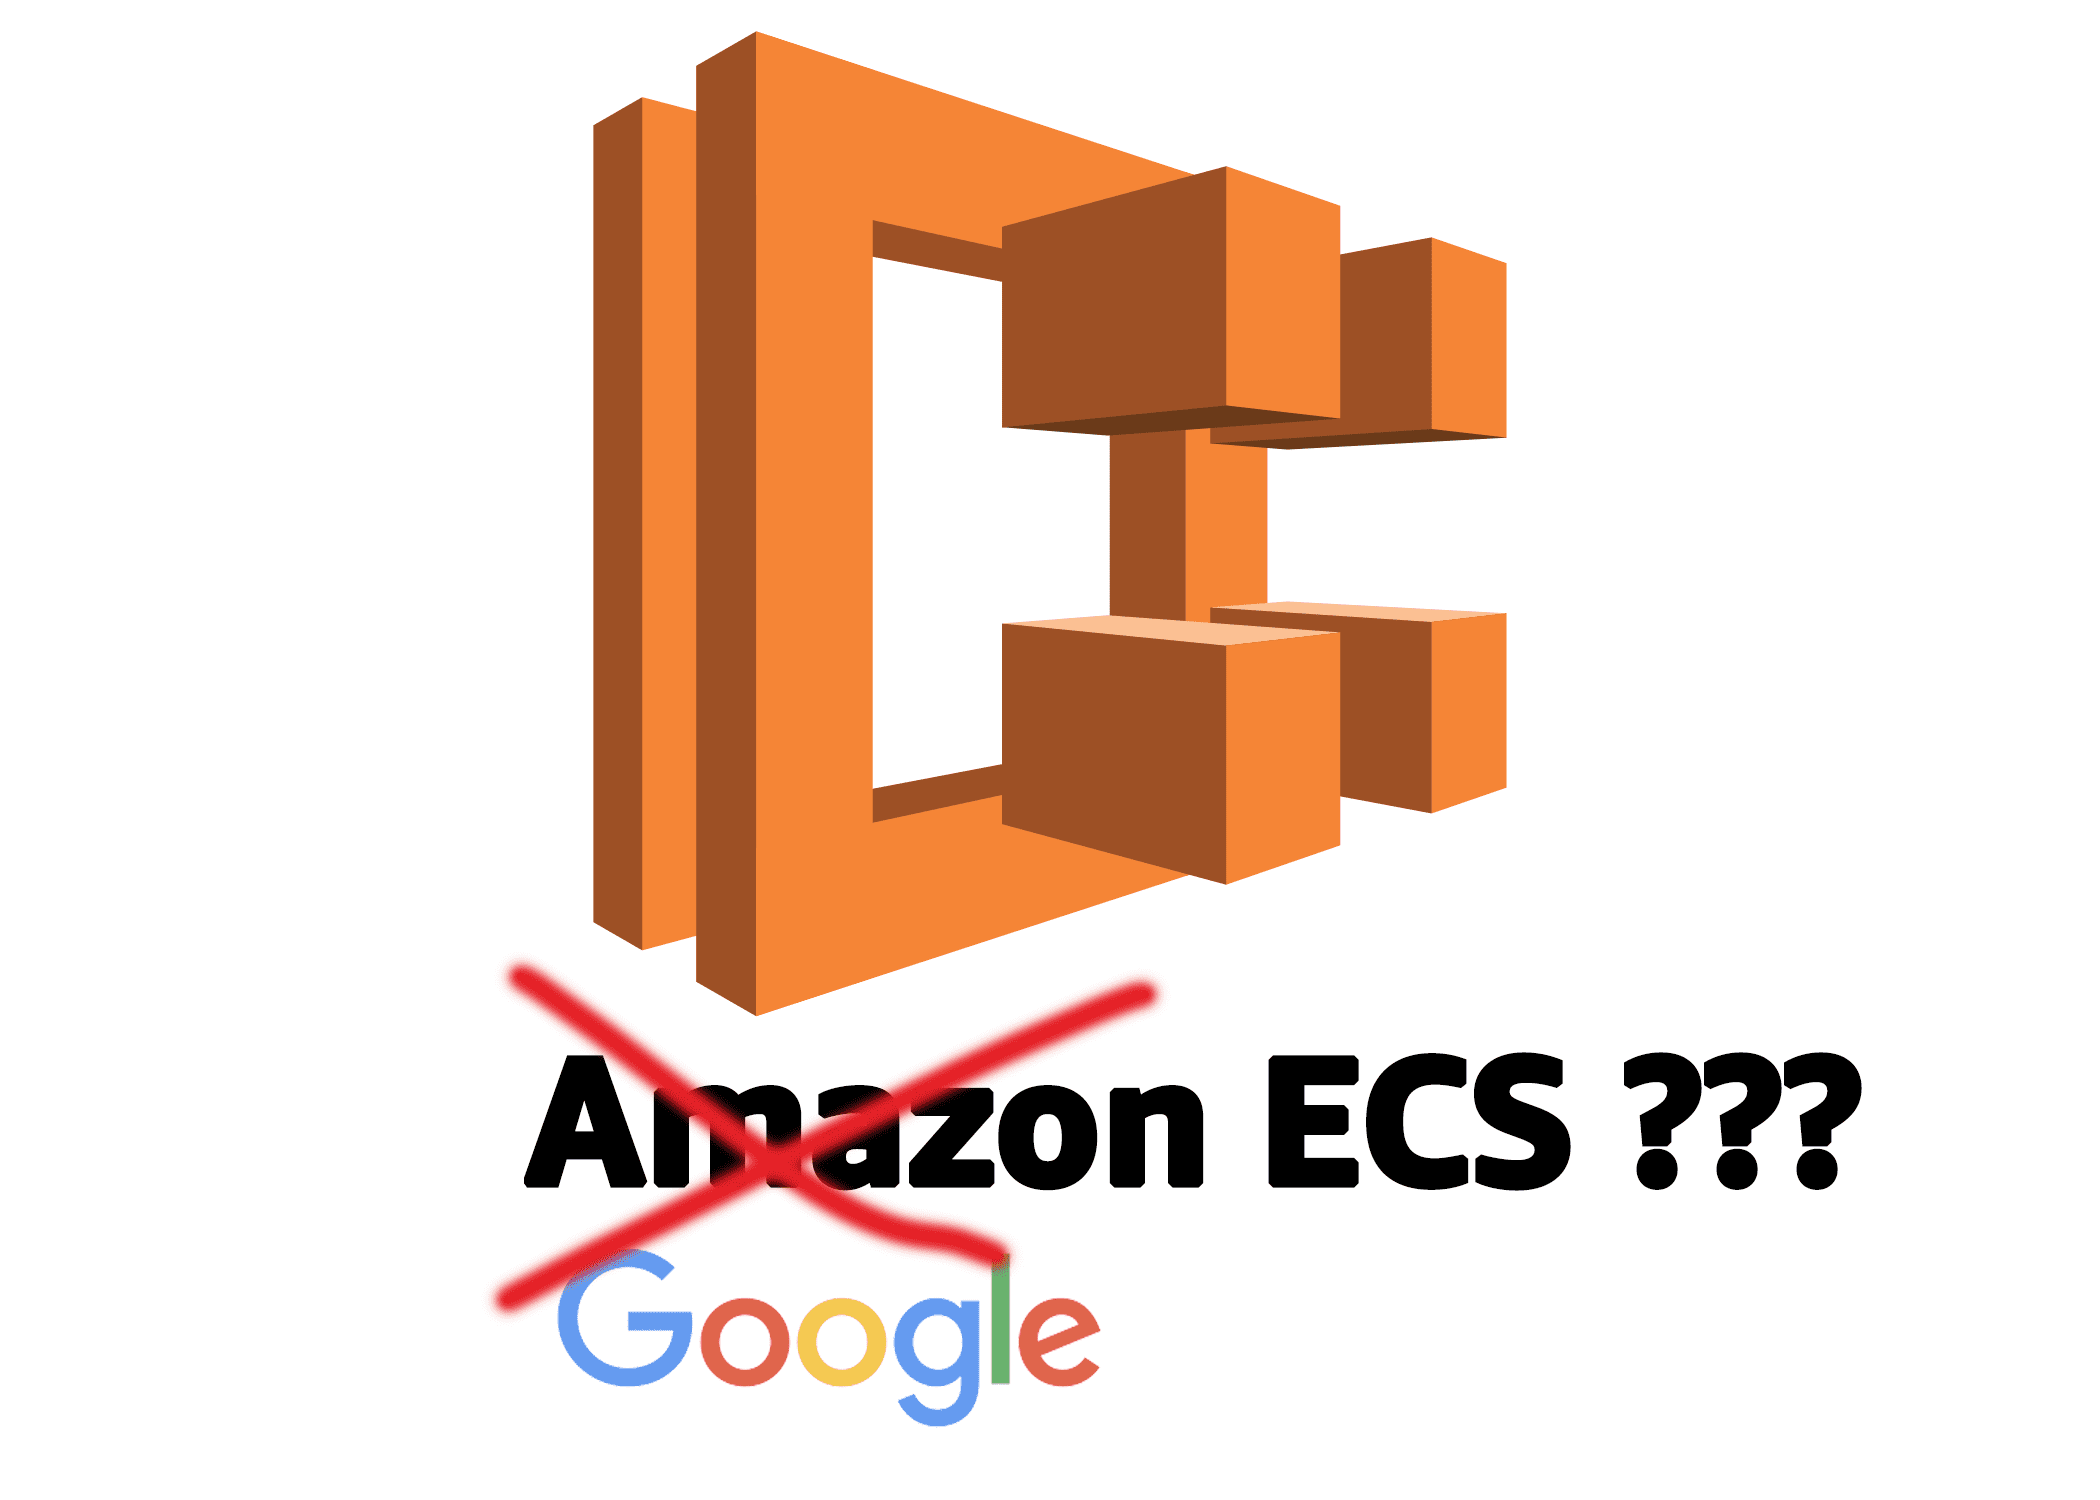 Google ECS?!